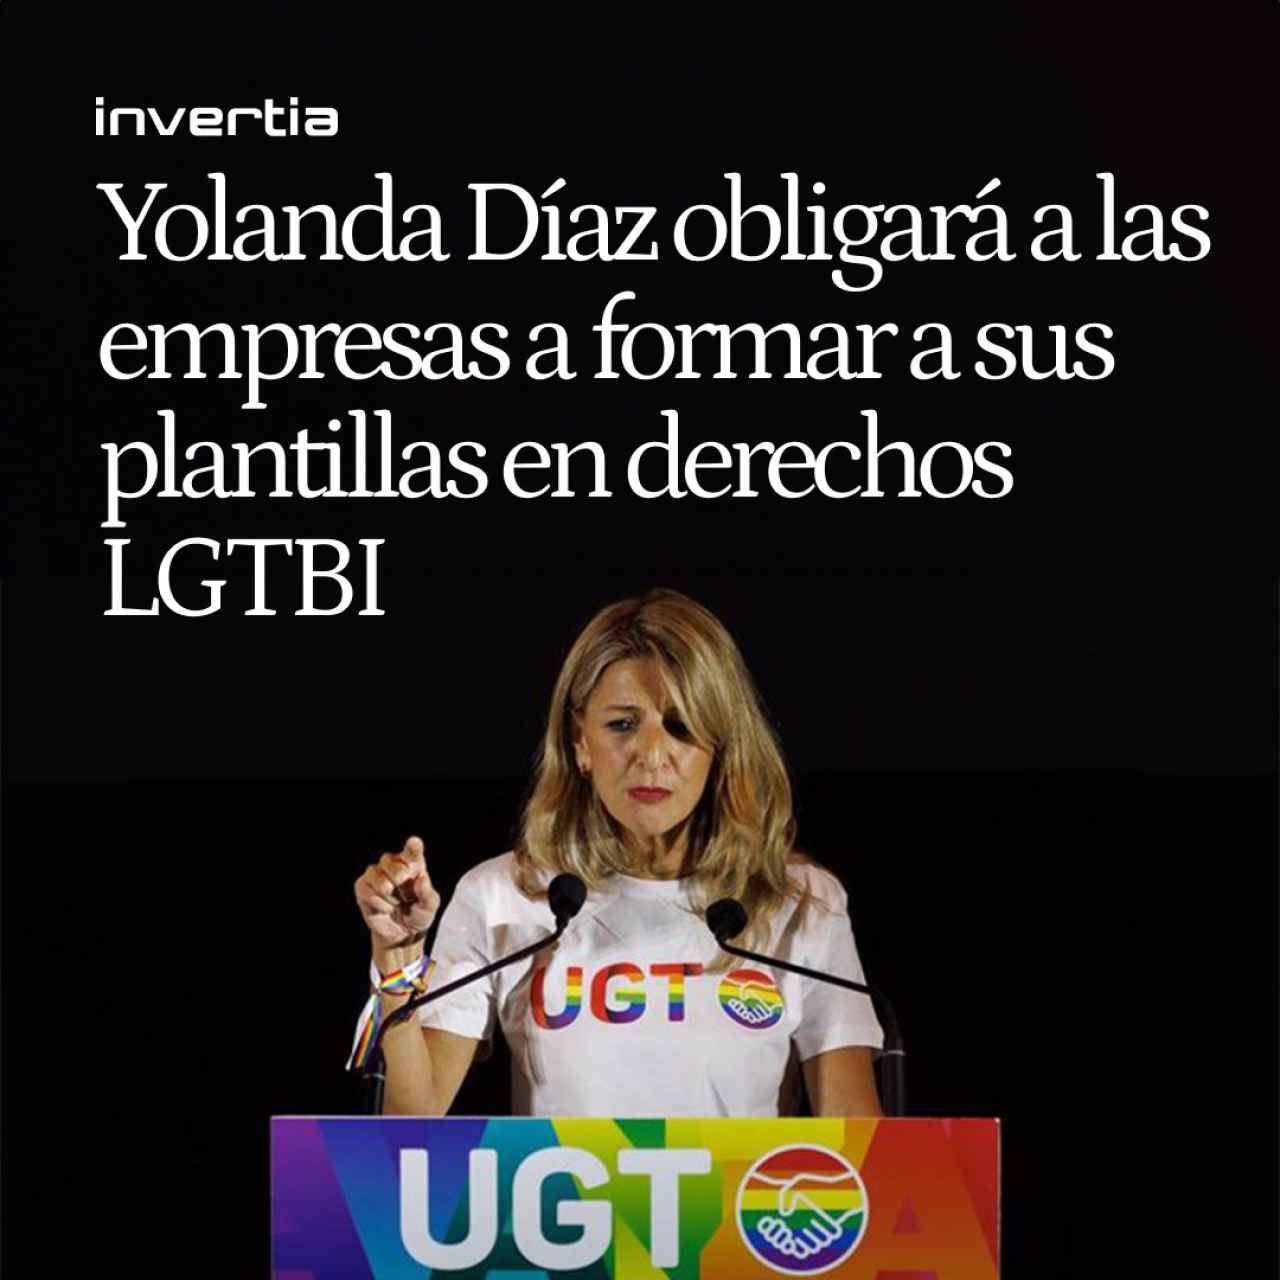 Díaz obligará a las empresas a formar a sus plantillas en derechos LGTBI, en especial al personal de recursos humanos